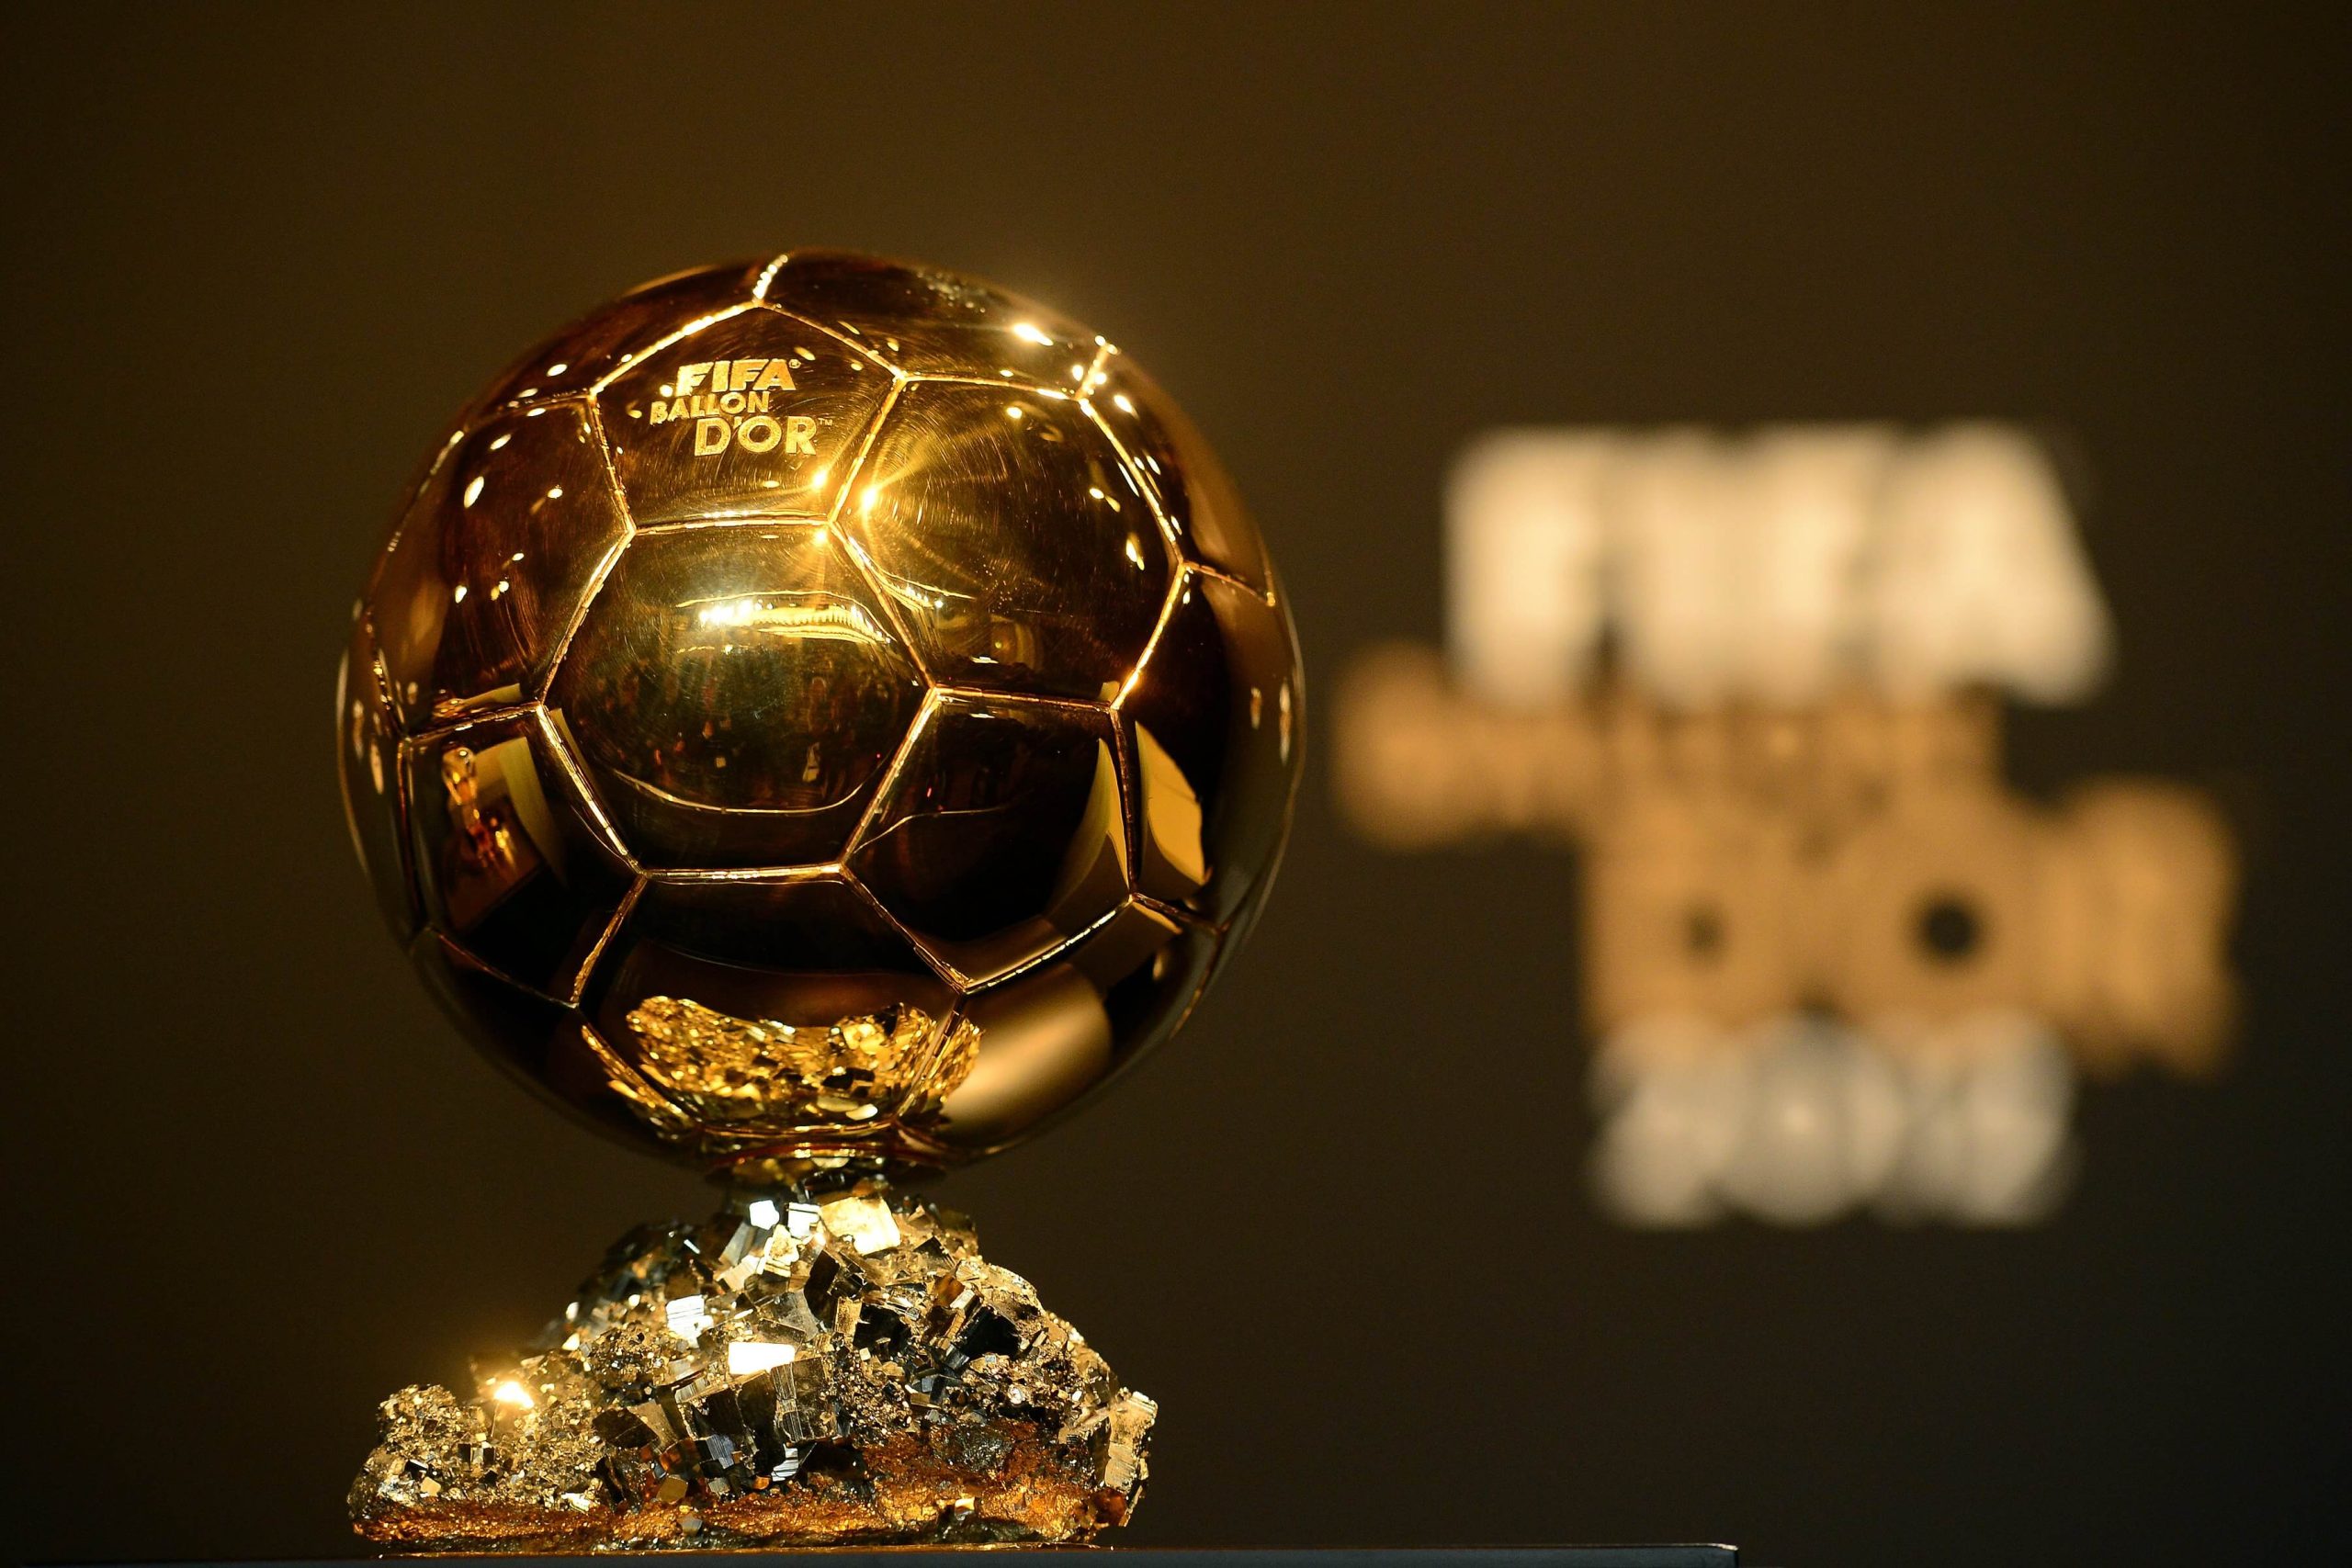 متى موعد تسليم الكرة الذهبية 2022 || الموعد والأسماء المرشحة للفوز بجائزة أفضل لاعب في العالم